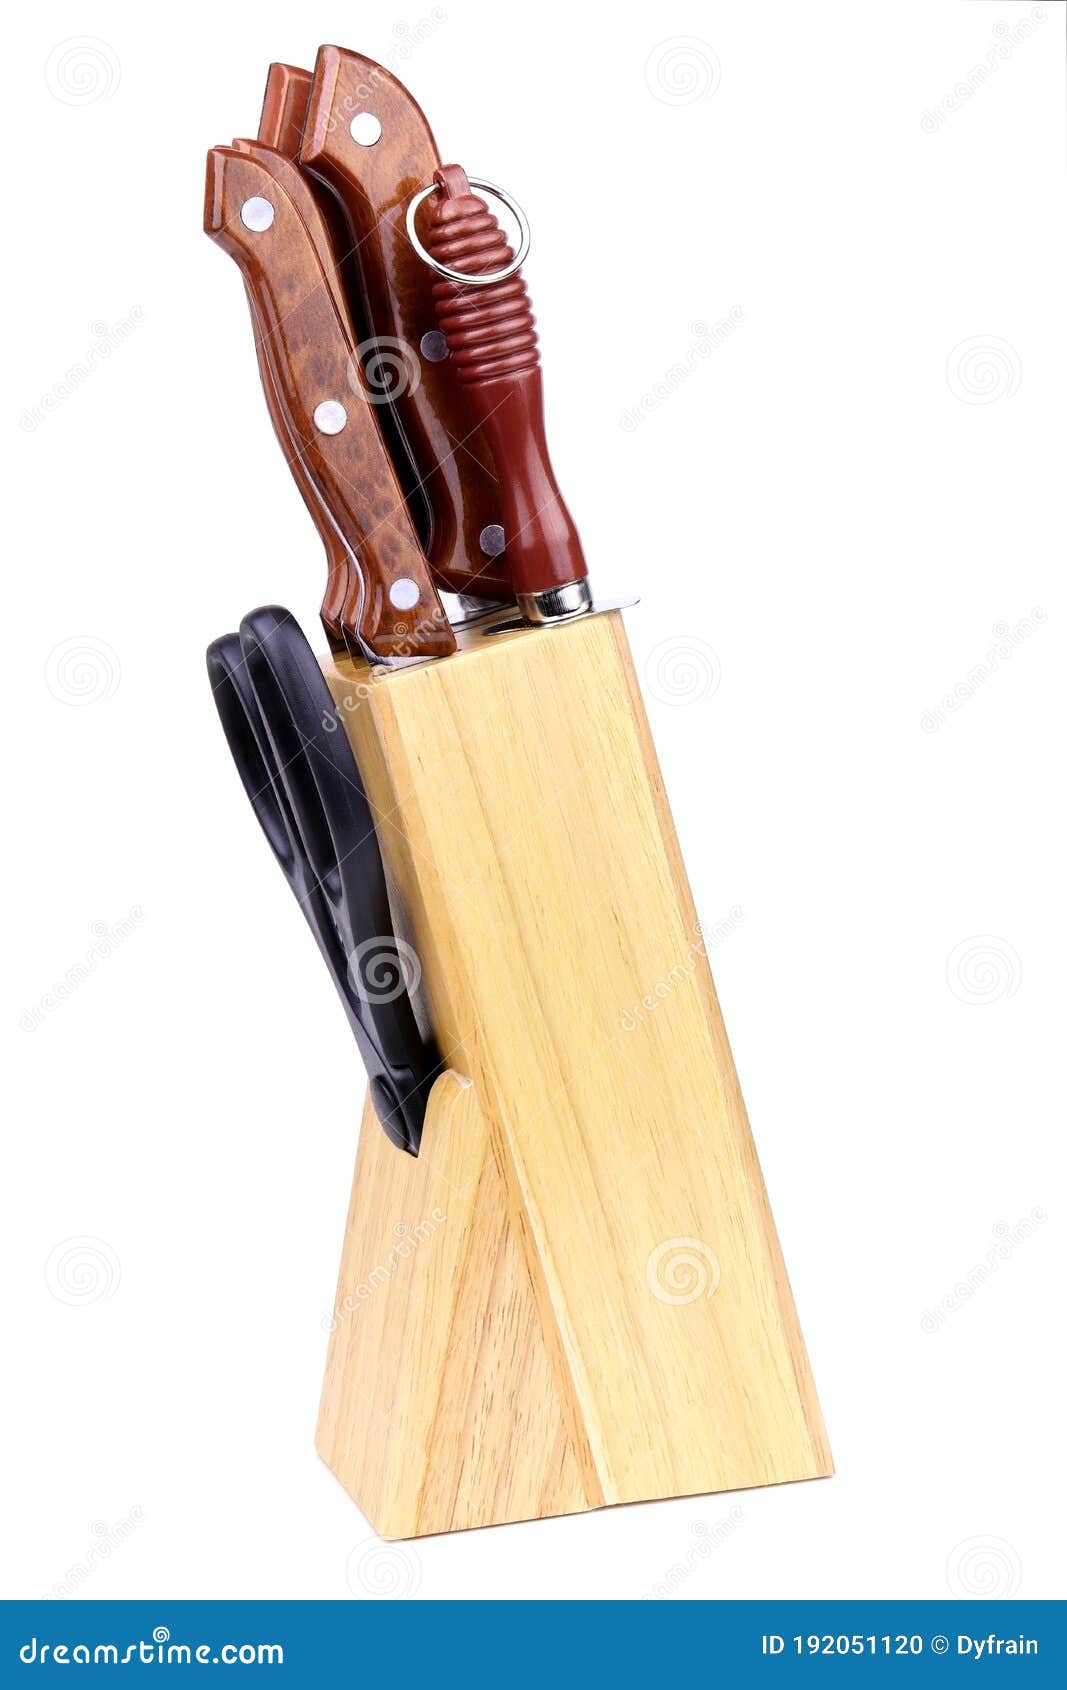 https://thumbs.dreamstime.com/z/cuchillos-de-cocina-y-tijeras-aisladas-en-un-soporte-madera-conjunto-para-portacuchillos-aislados-192051120.jpg